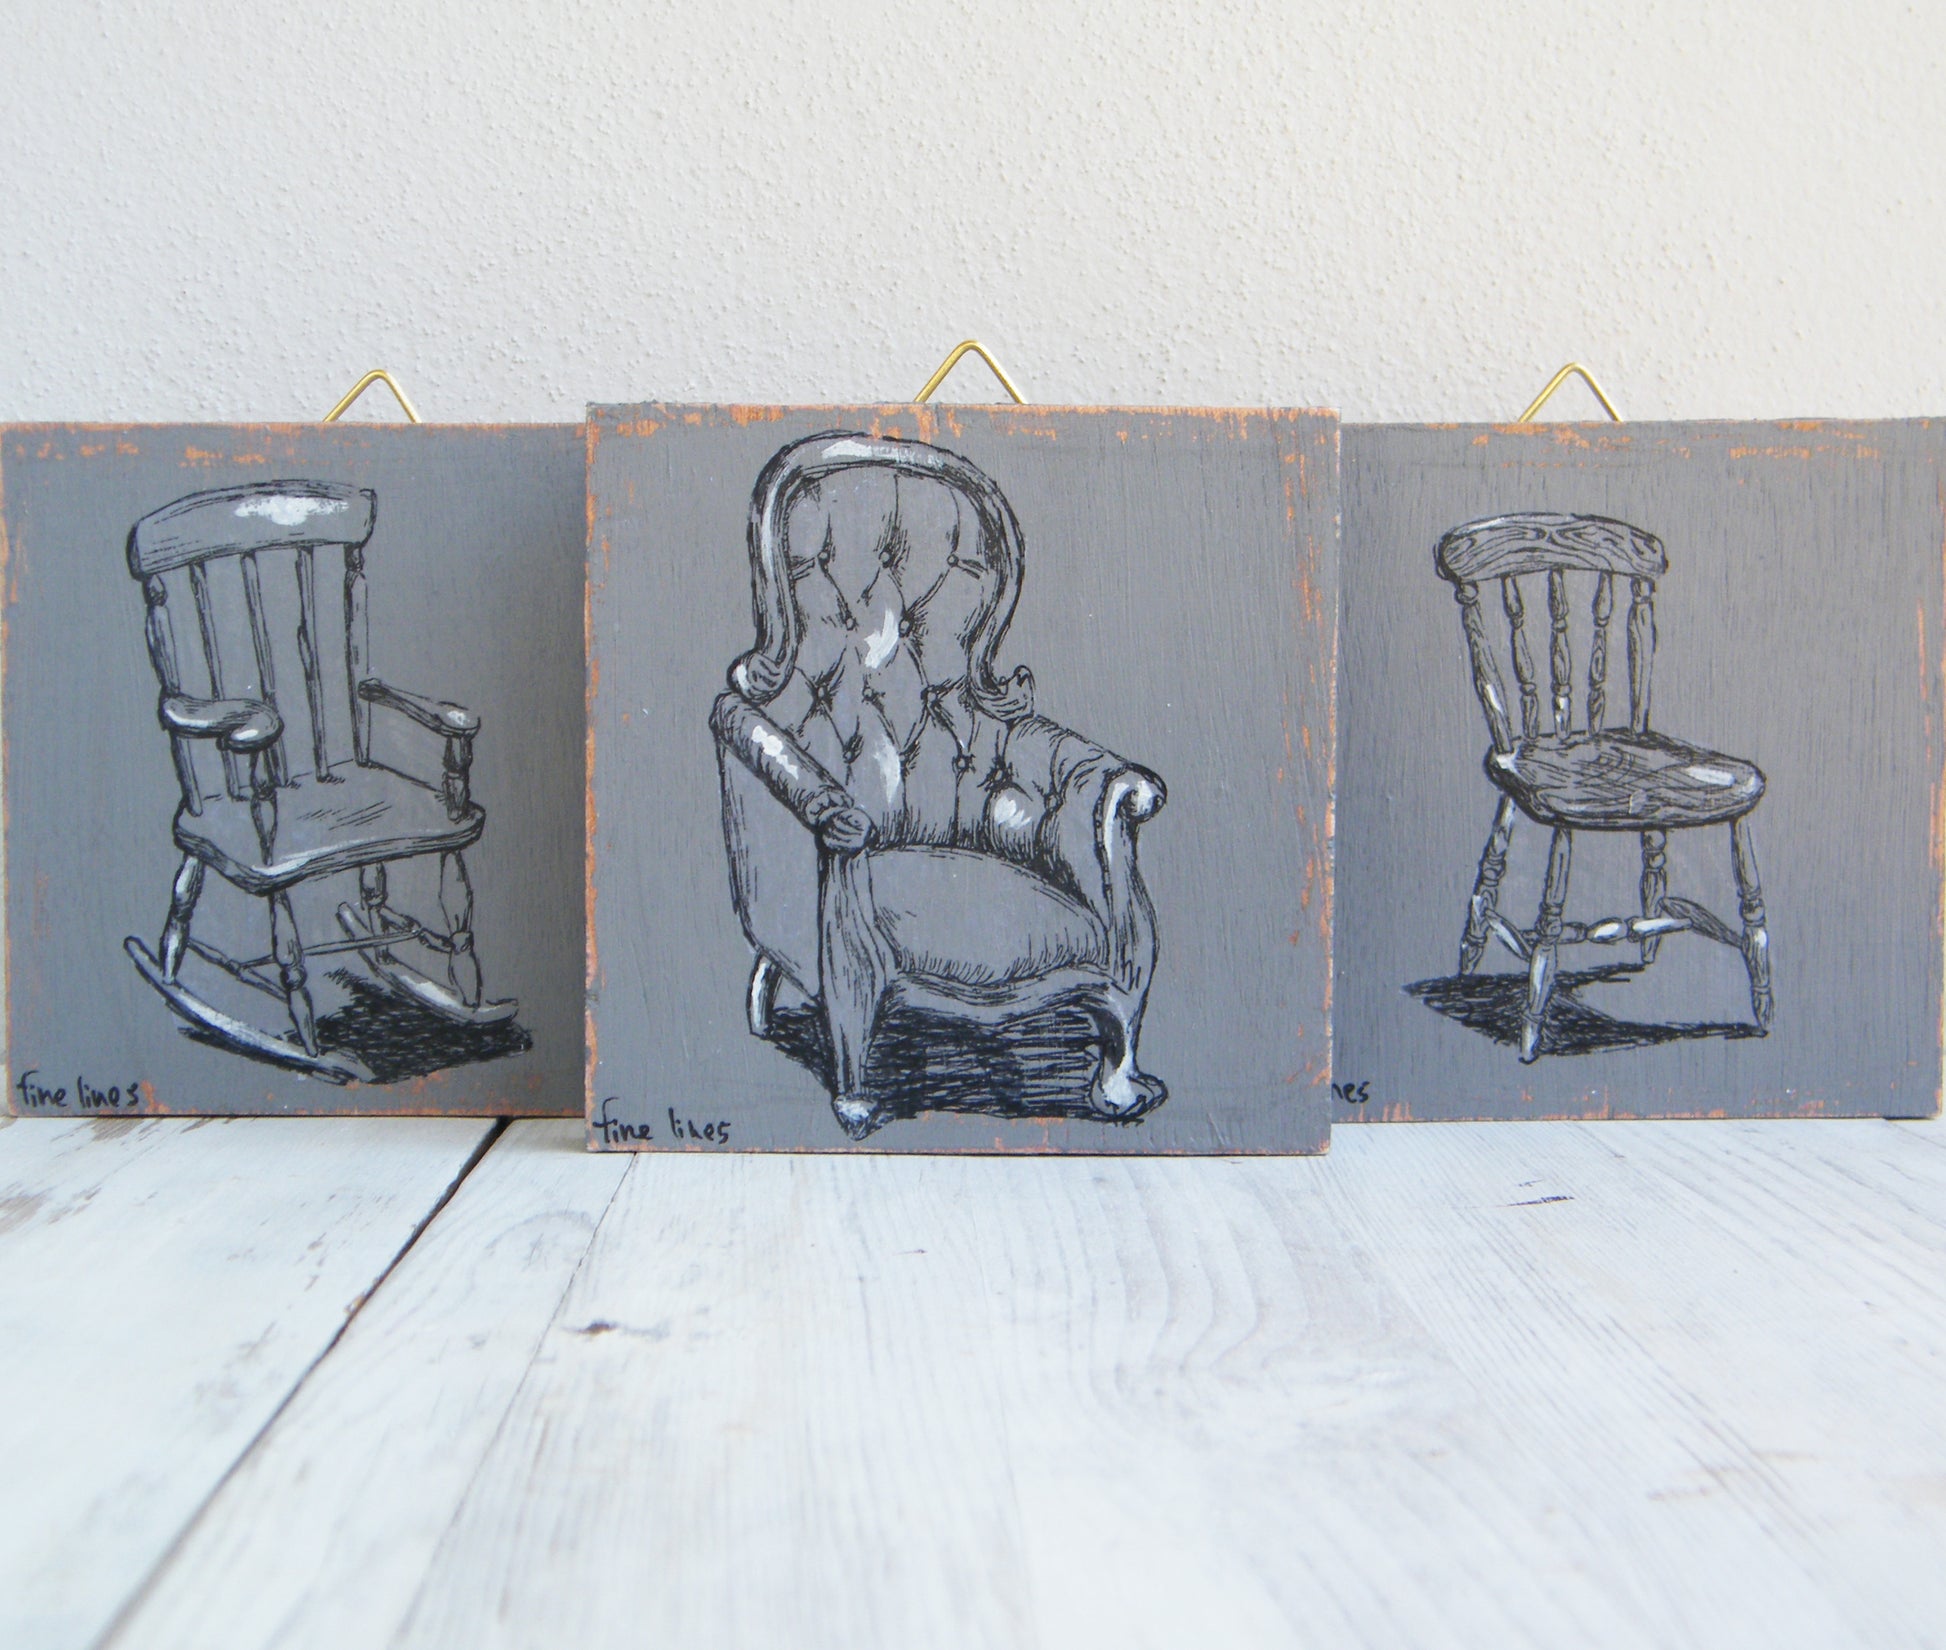 סט תמונות קטנות הדפס כסאות עתיקים - rachelsfinelines